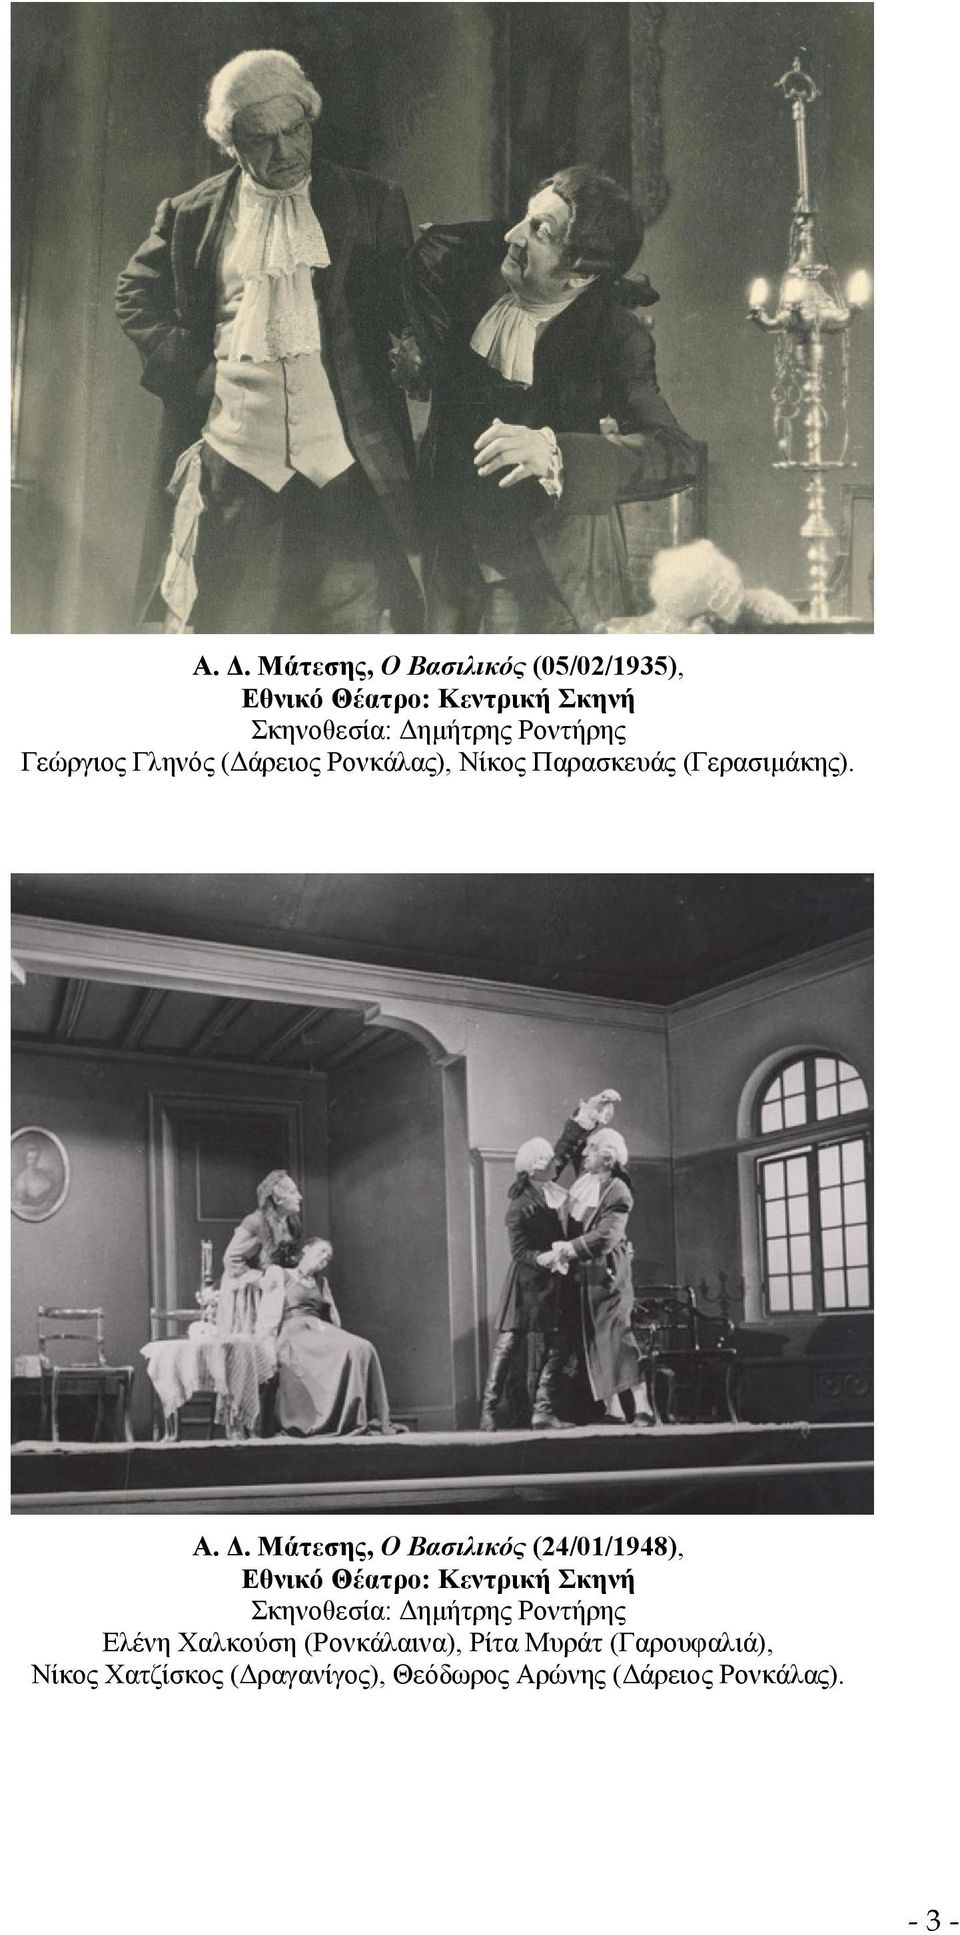 Μάτεσης, Ο Βασιλικός (24/01/1948), Εθνικό Θέατρο: Κεντρική Σκηνή Σκηνοθεσία: Δημήτρης Ροντήρης